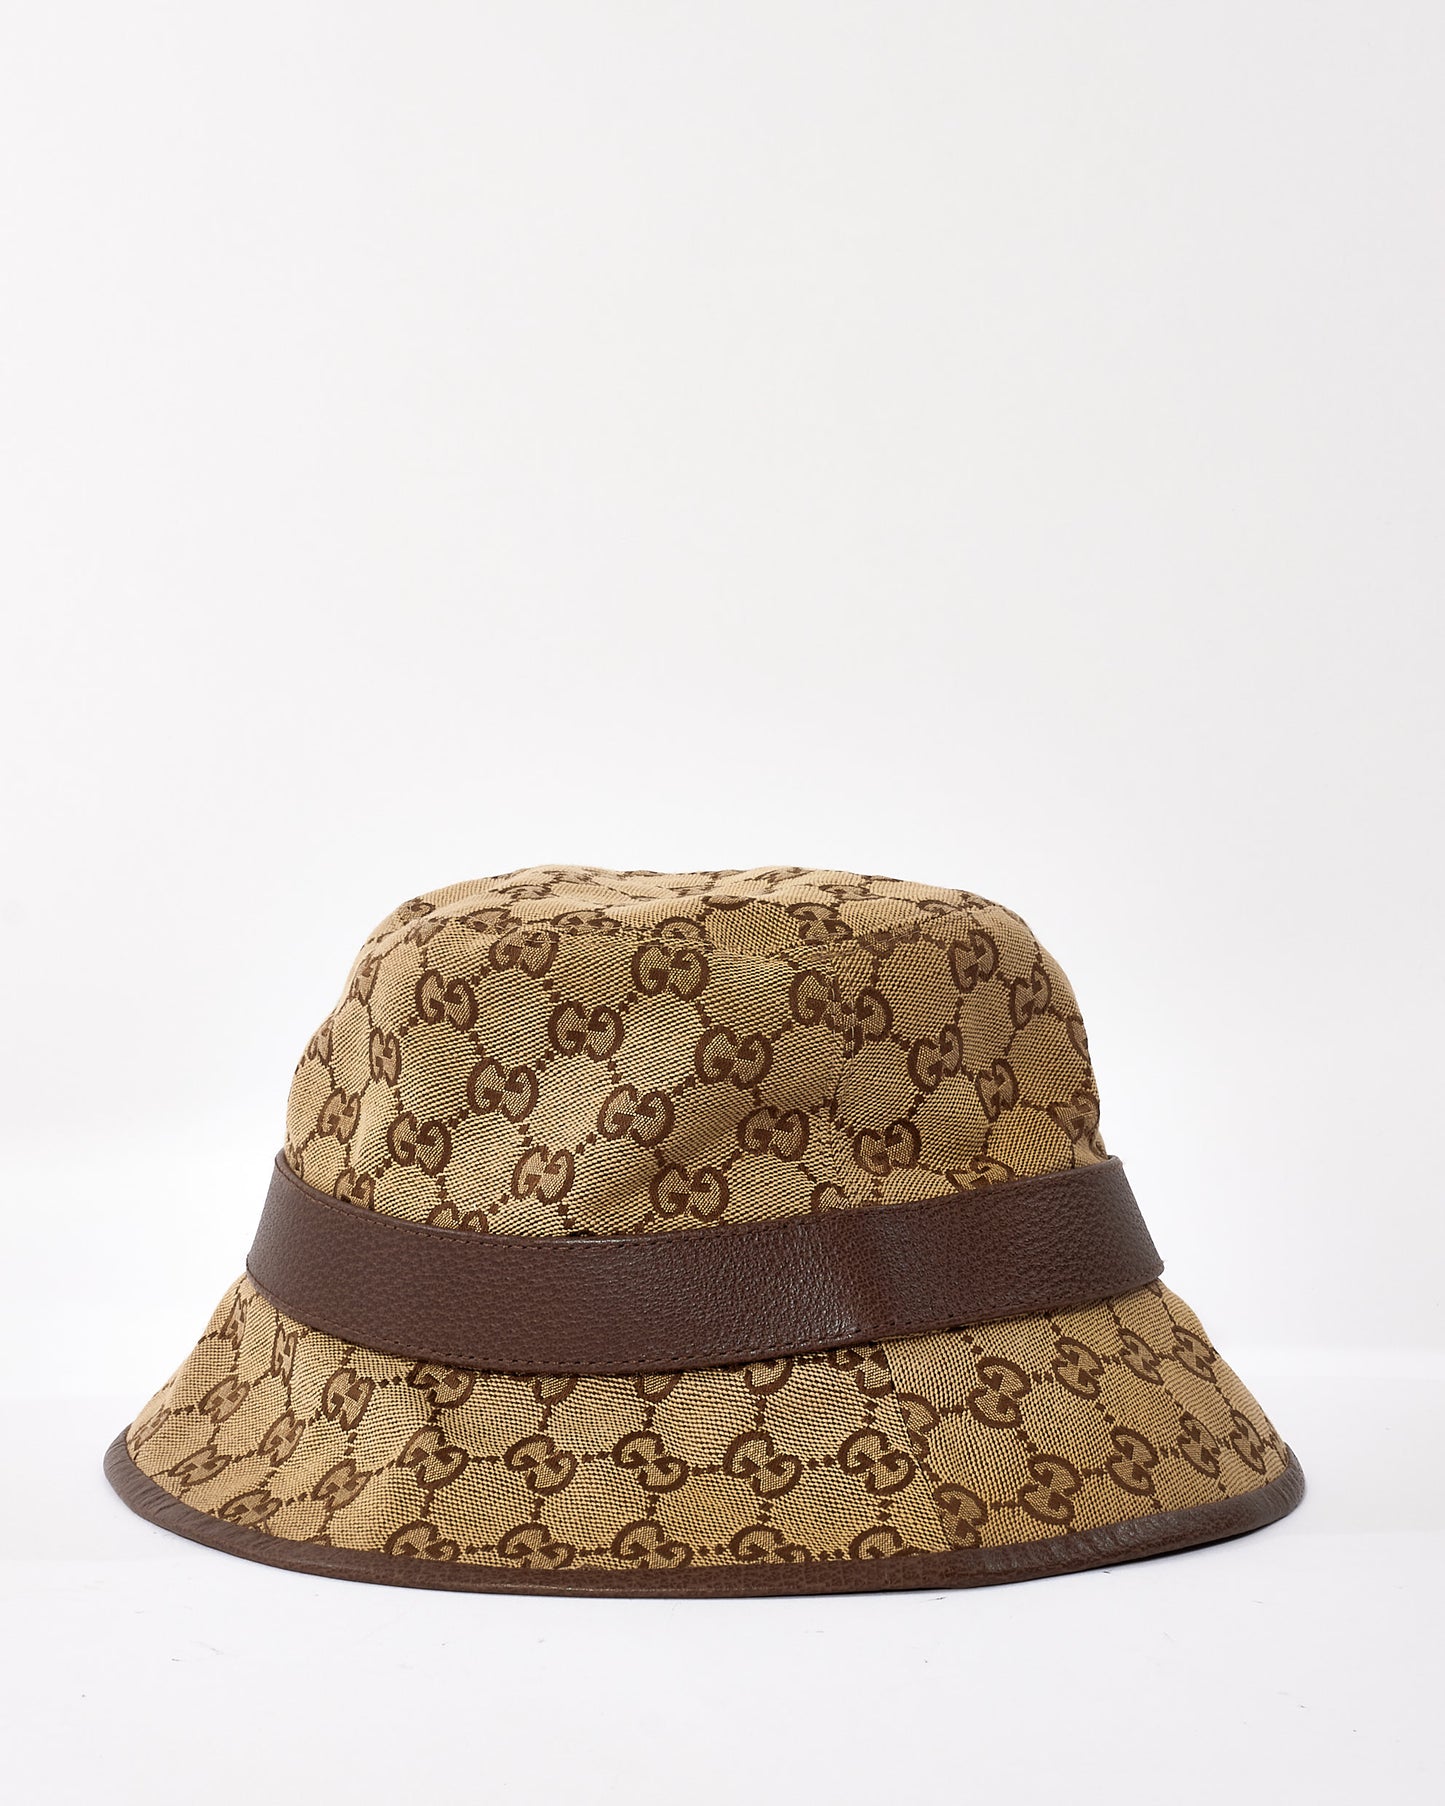 Gucci Beige/Brown GG Canvas Bucket Hat - M